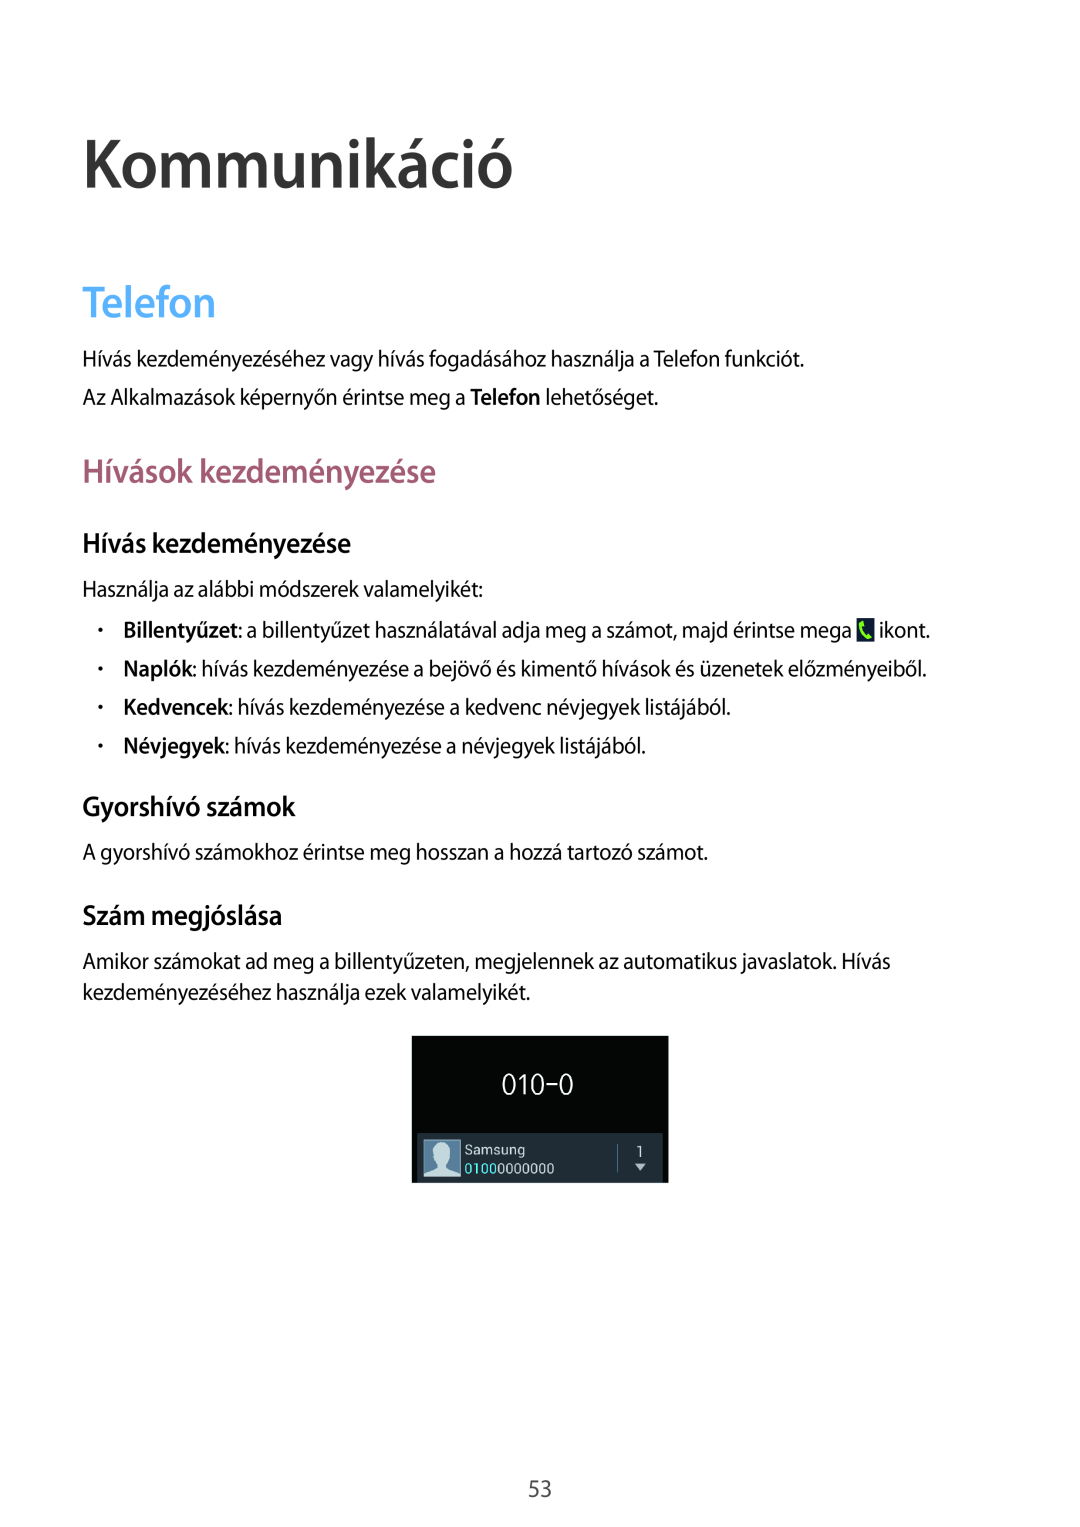 Samsung GT-N7100TADTMZ manual Kommunikáció, Telefon, Hívások kezdeményezése, Hívás kezdeményezése, Gyorshívó számok 